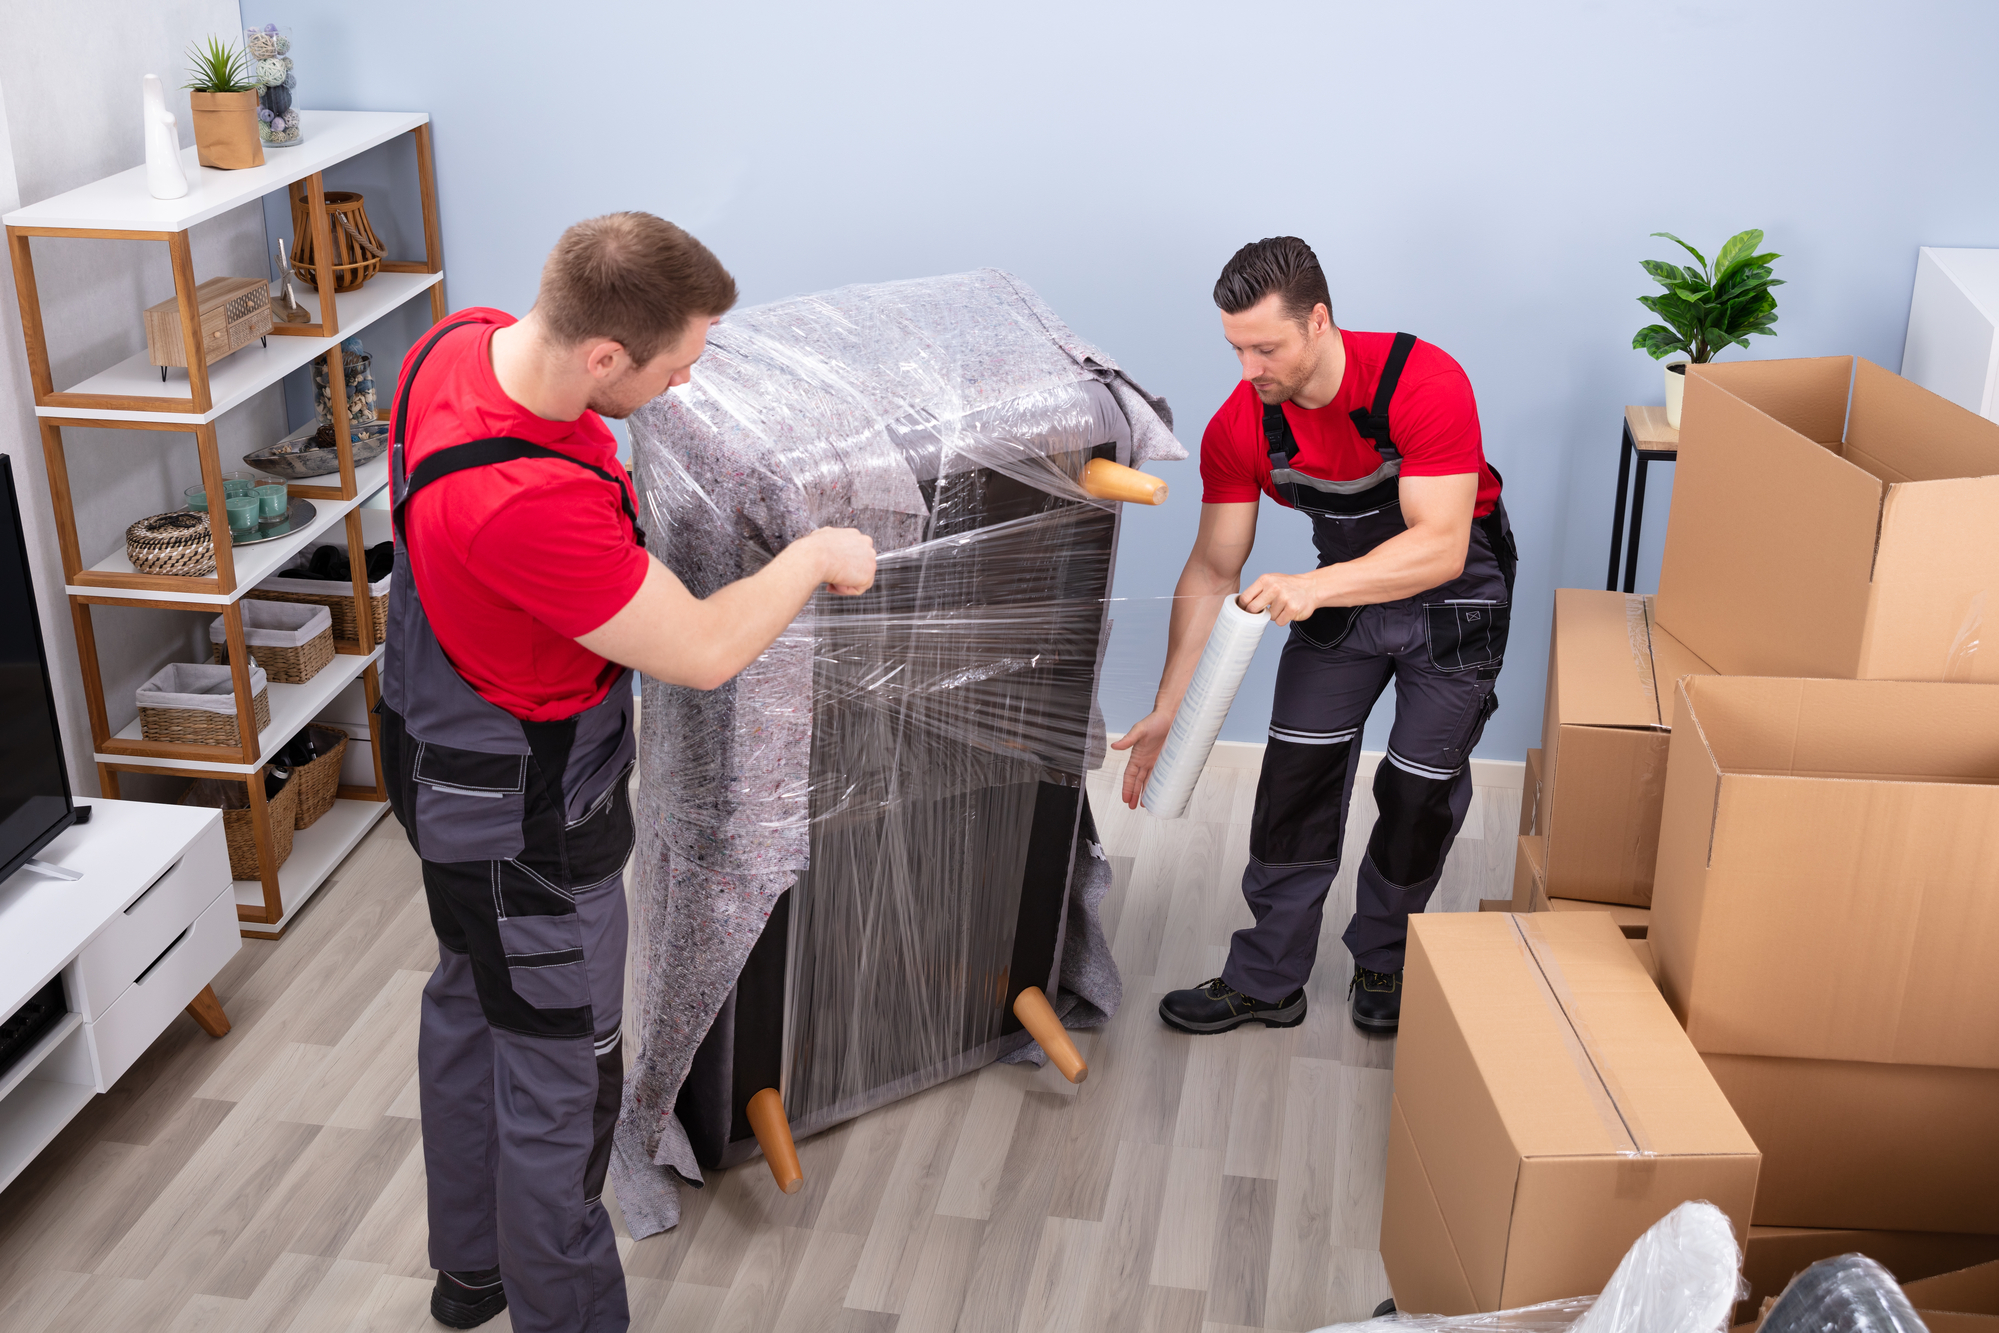 Comment protéger vos meubles durant un déménagement ? - JSB Déménagements